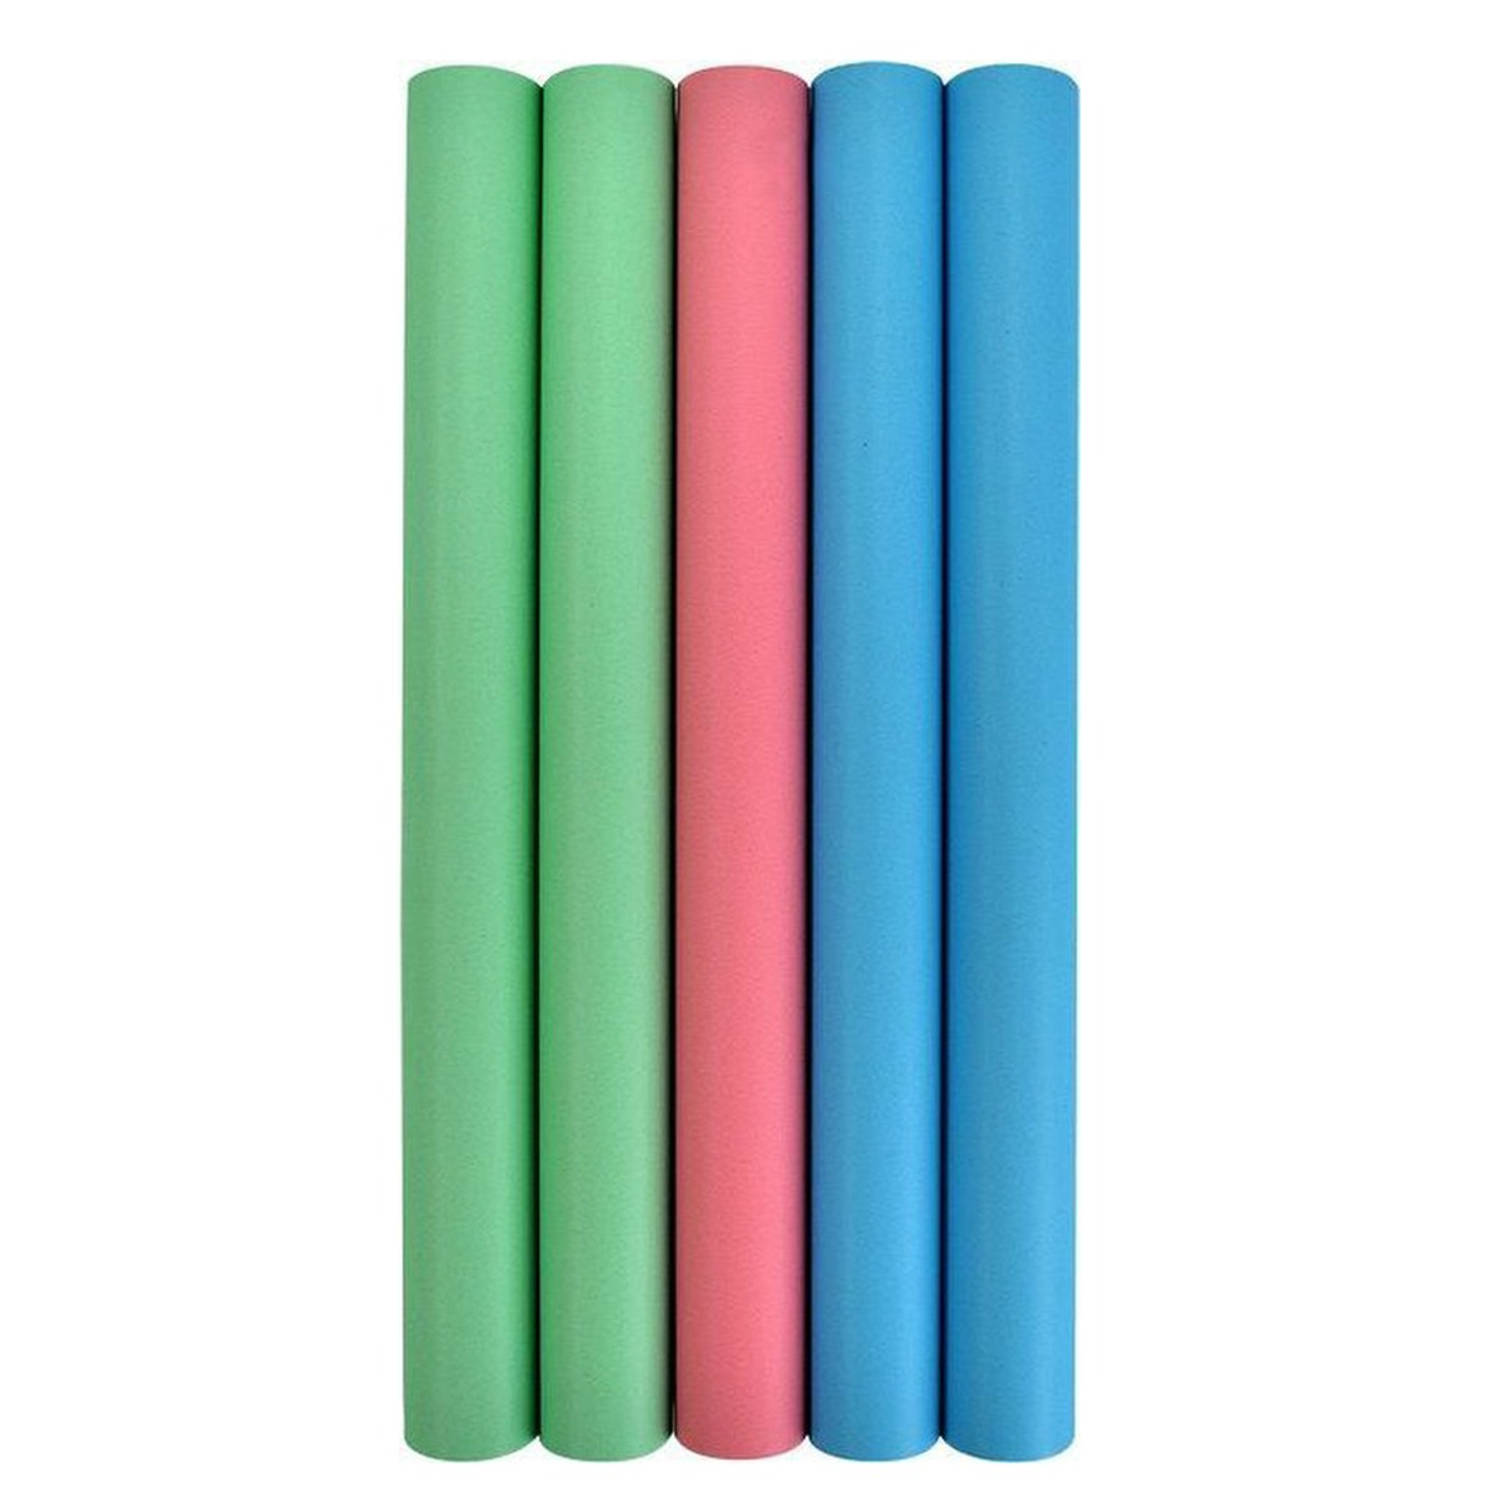 Verhaak Kaftpapier 5 rollen Pastel roze blauw groen 4m x 35cm